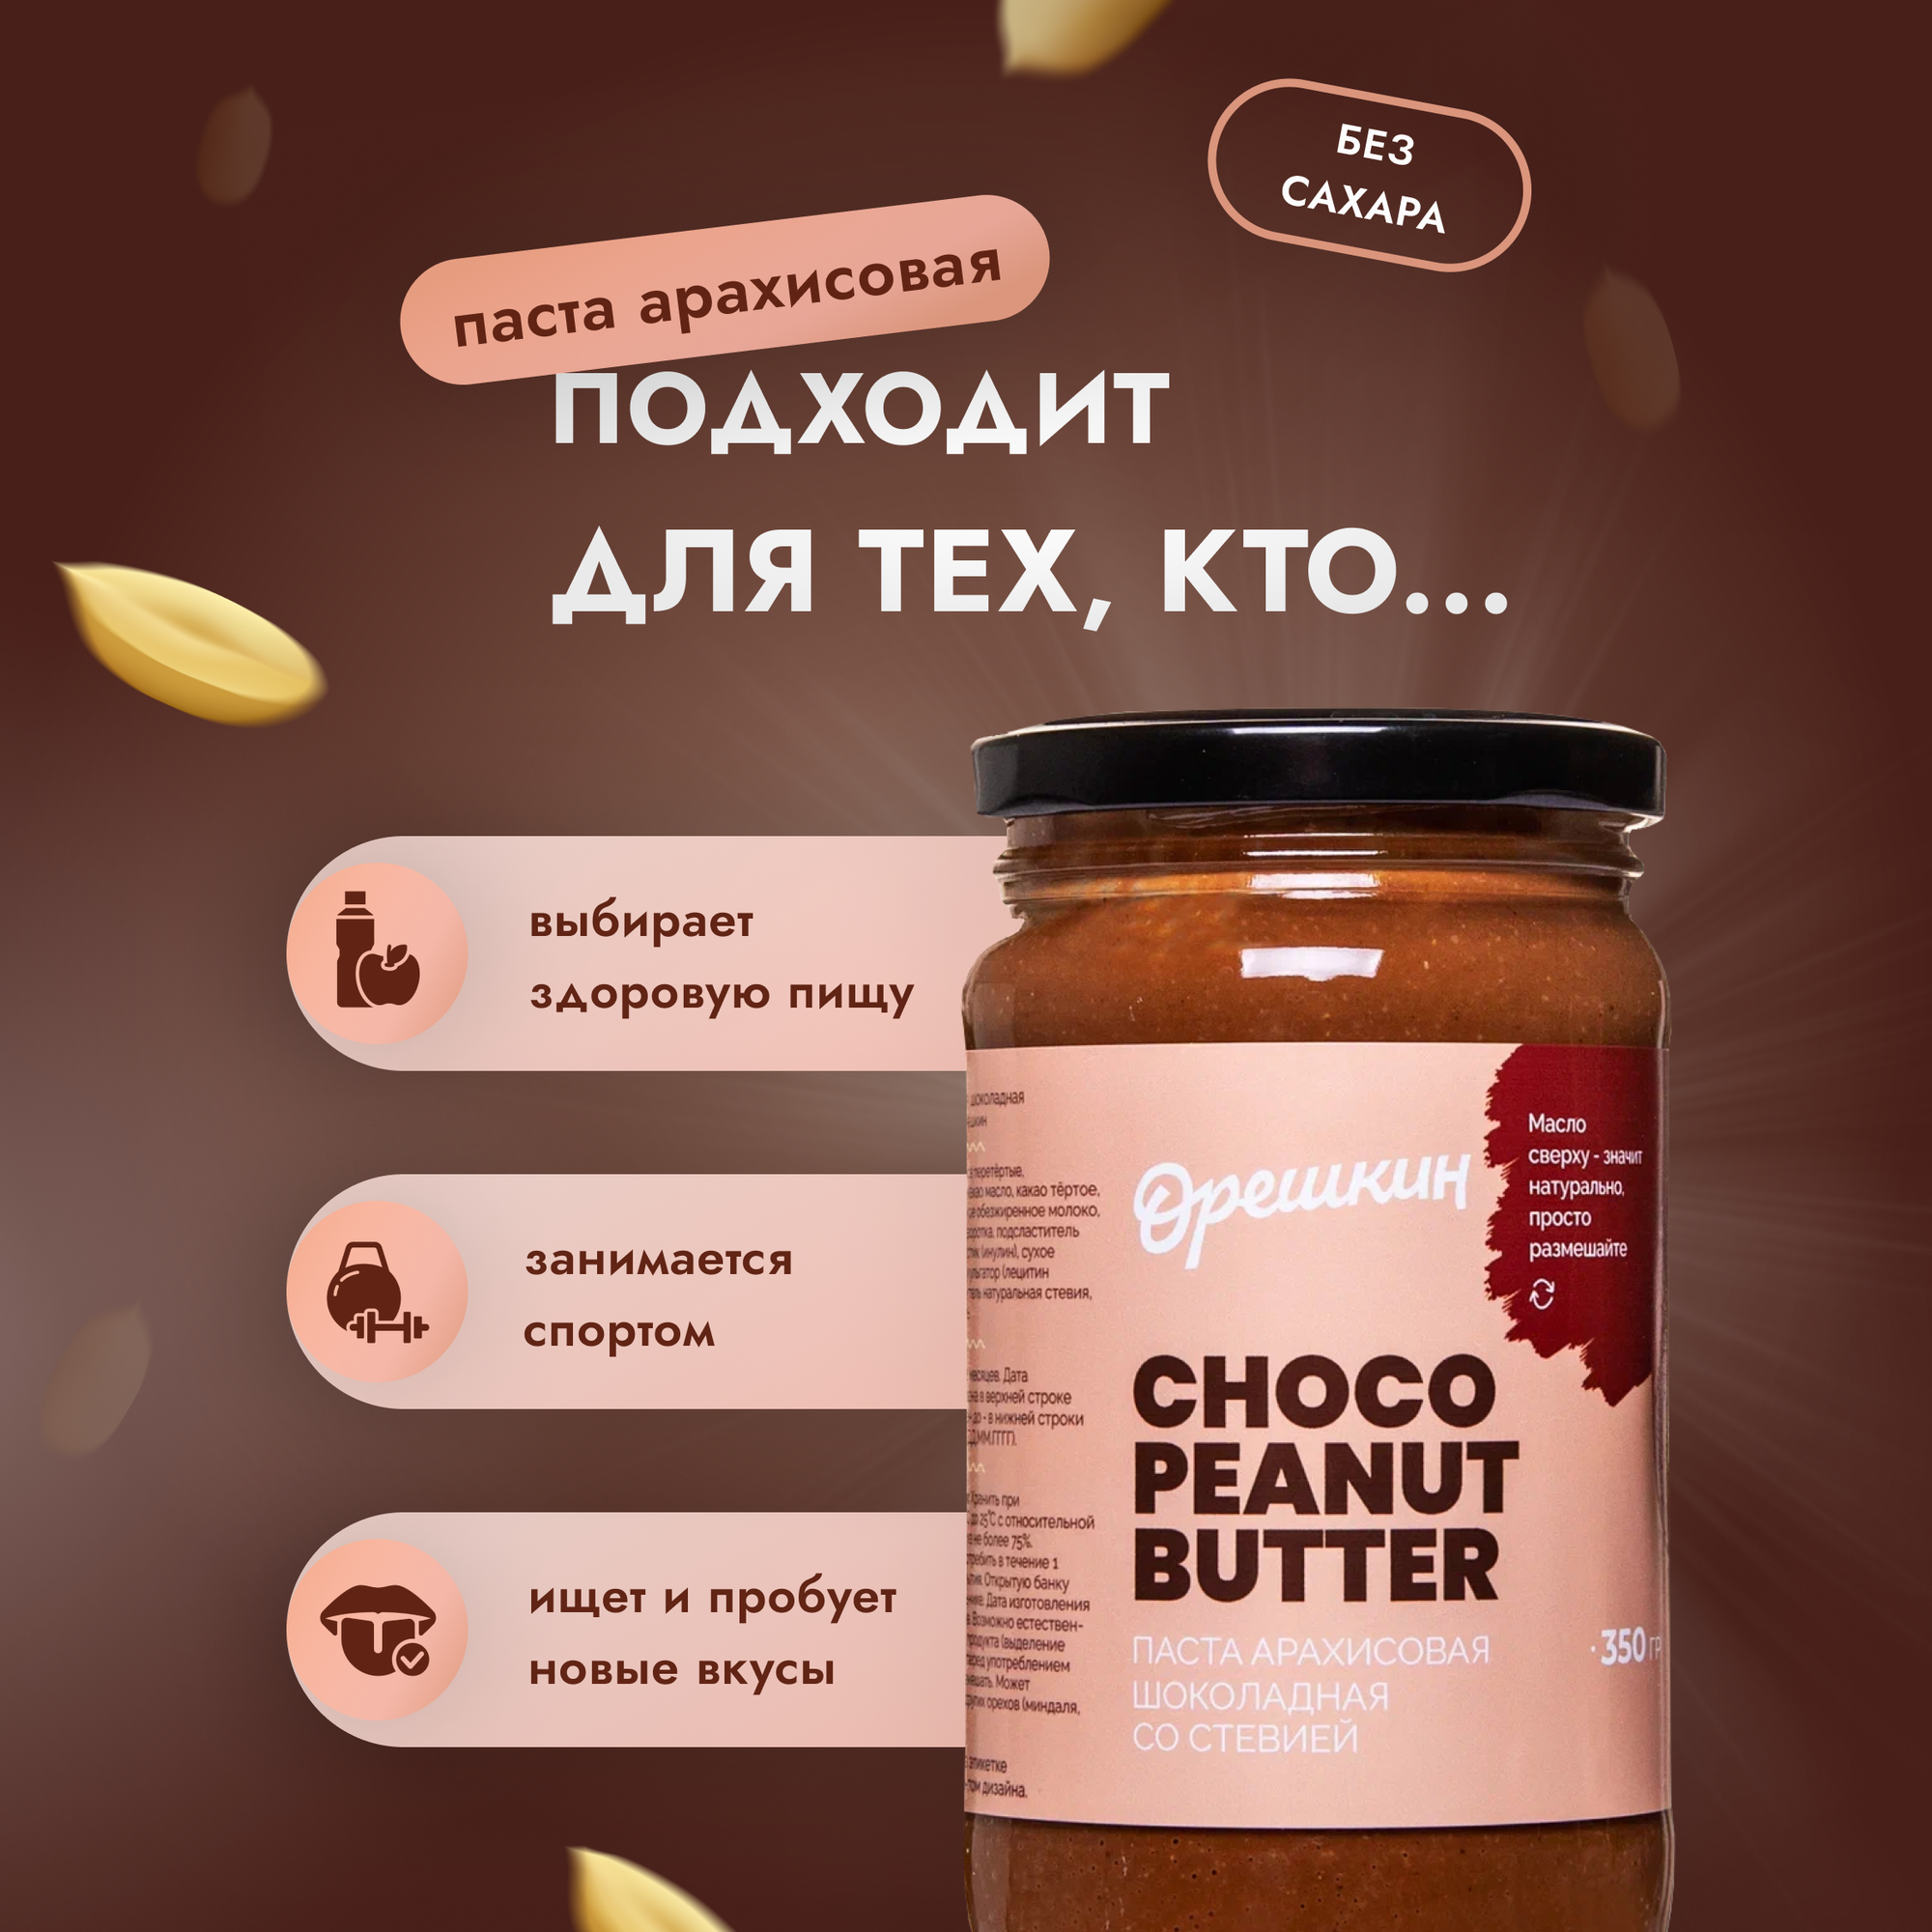 Паста арахисовая "Орешкин" шоколадная со стевией 350 гр - фотография № 4